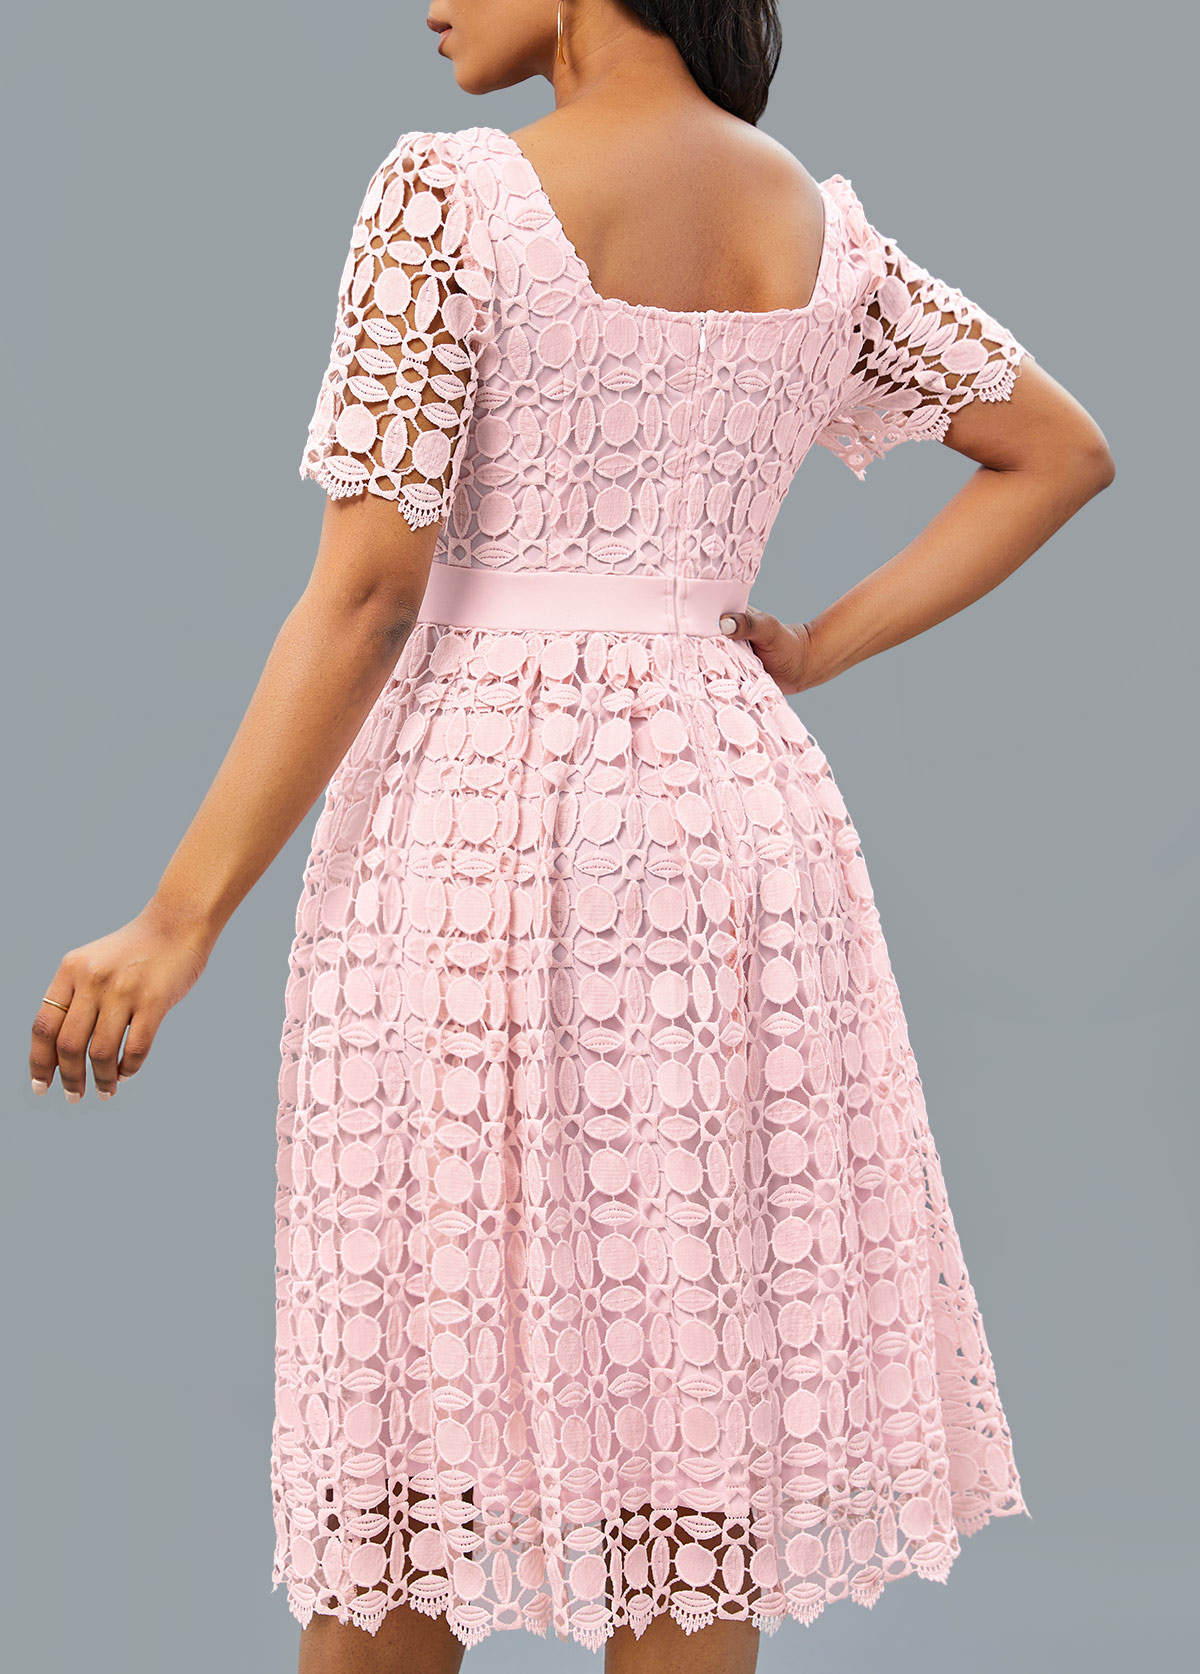 Patchwork Light Pink Short Sleeve Square Neck Dress